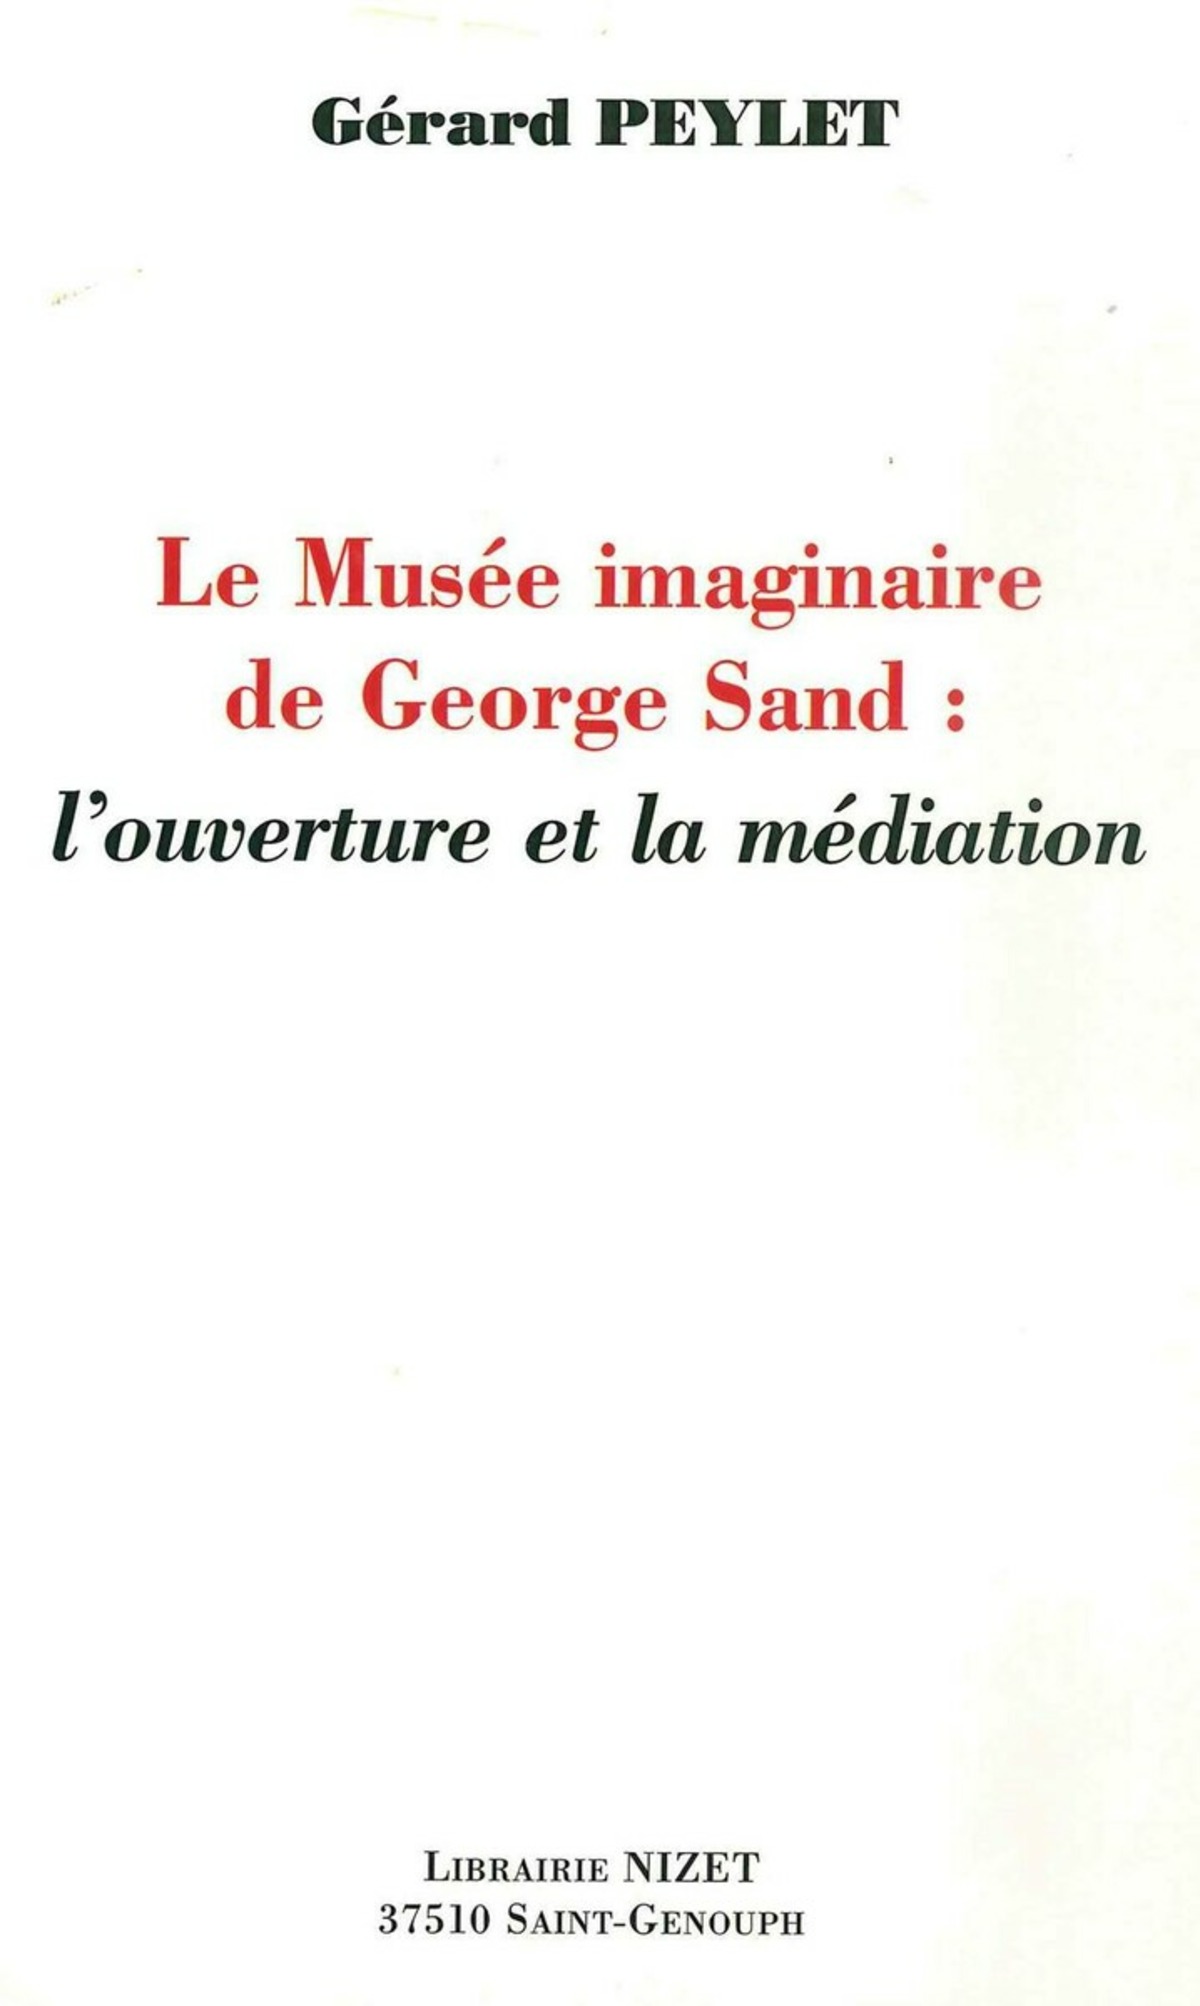 Le Musée imaginaire de George Sand